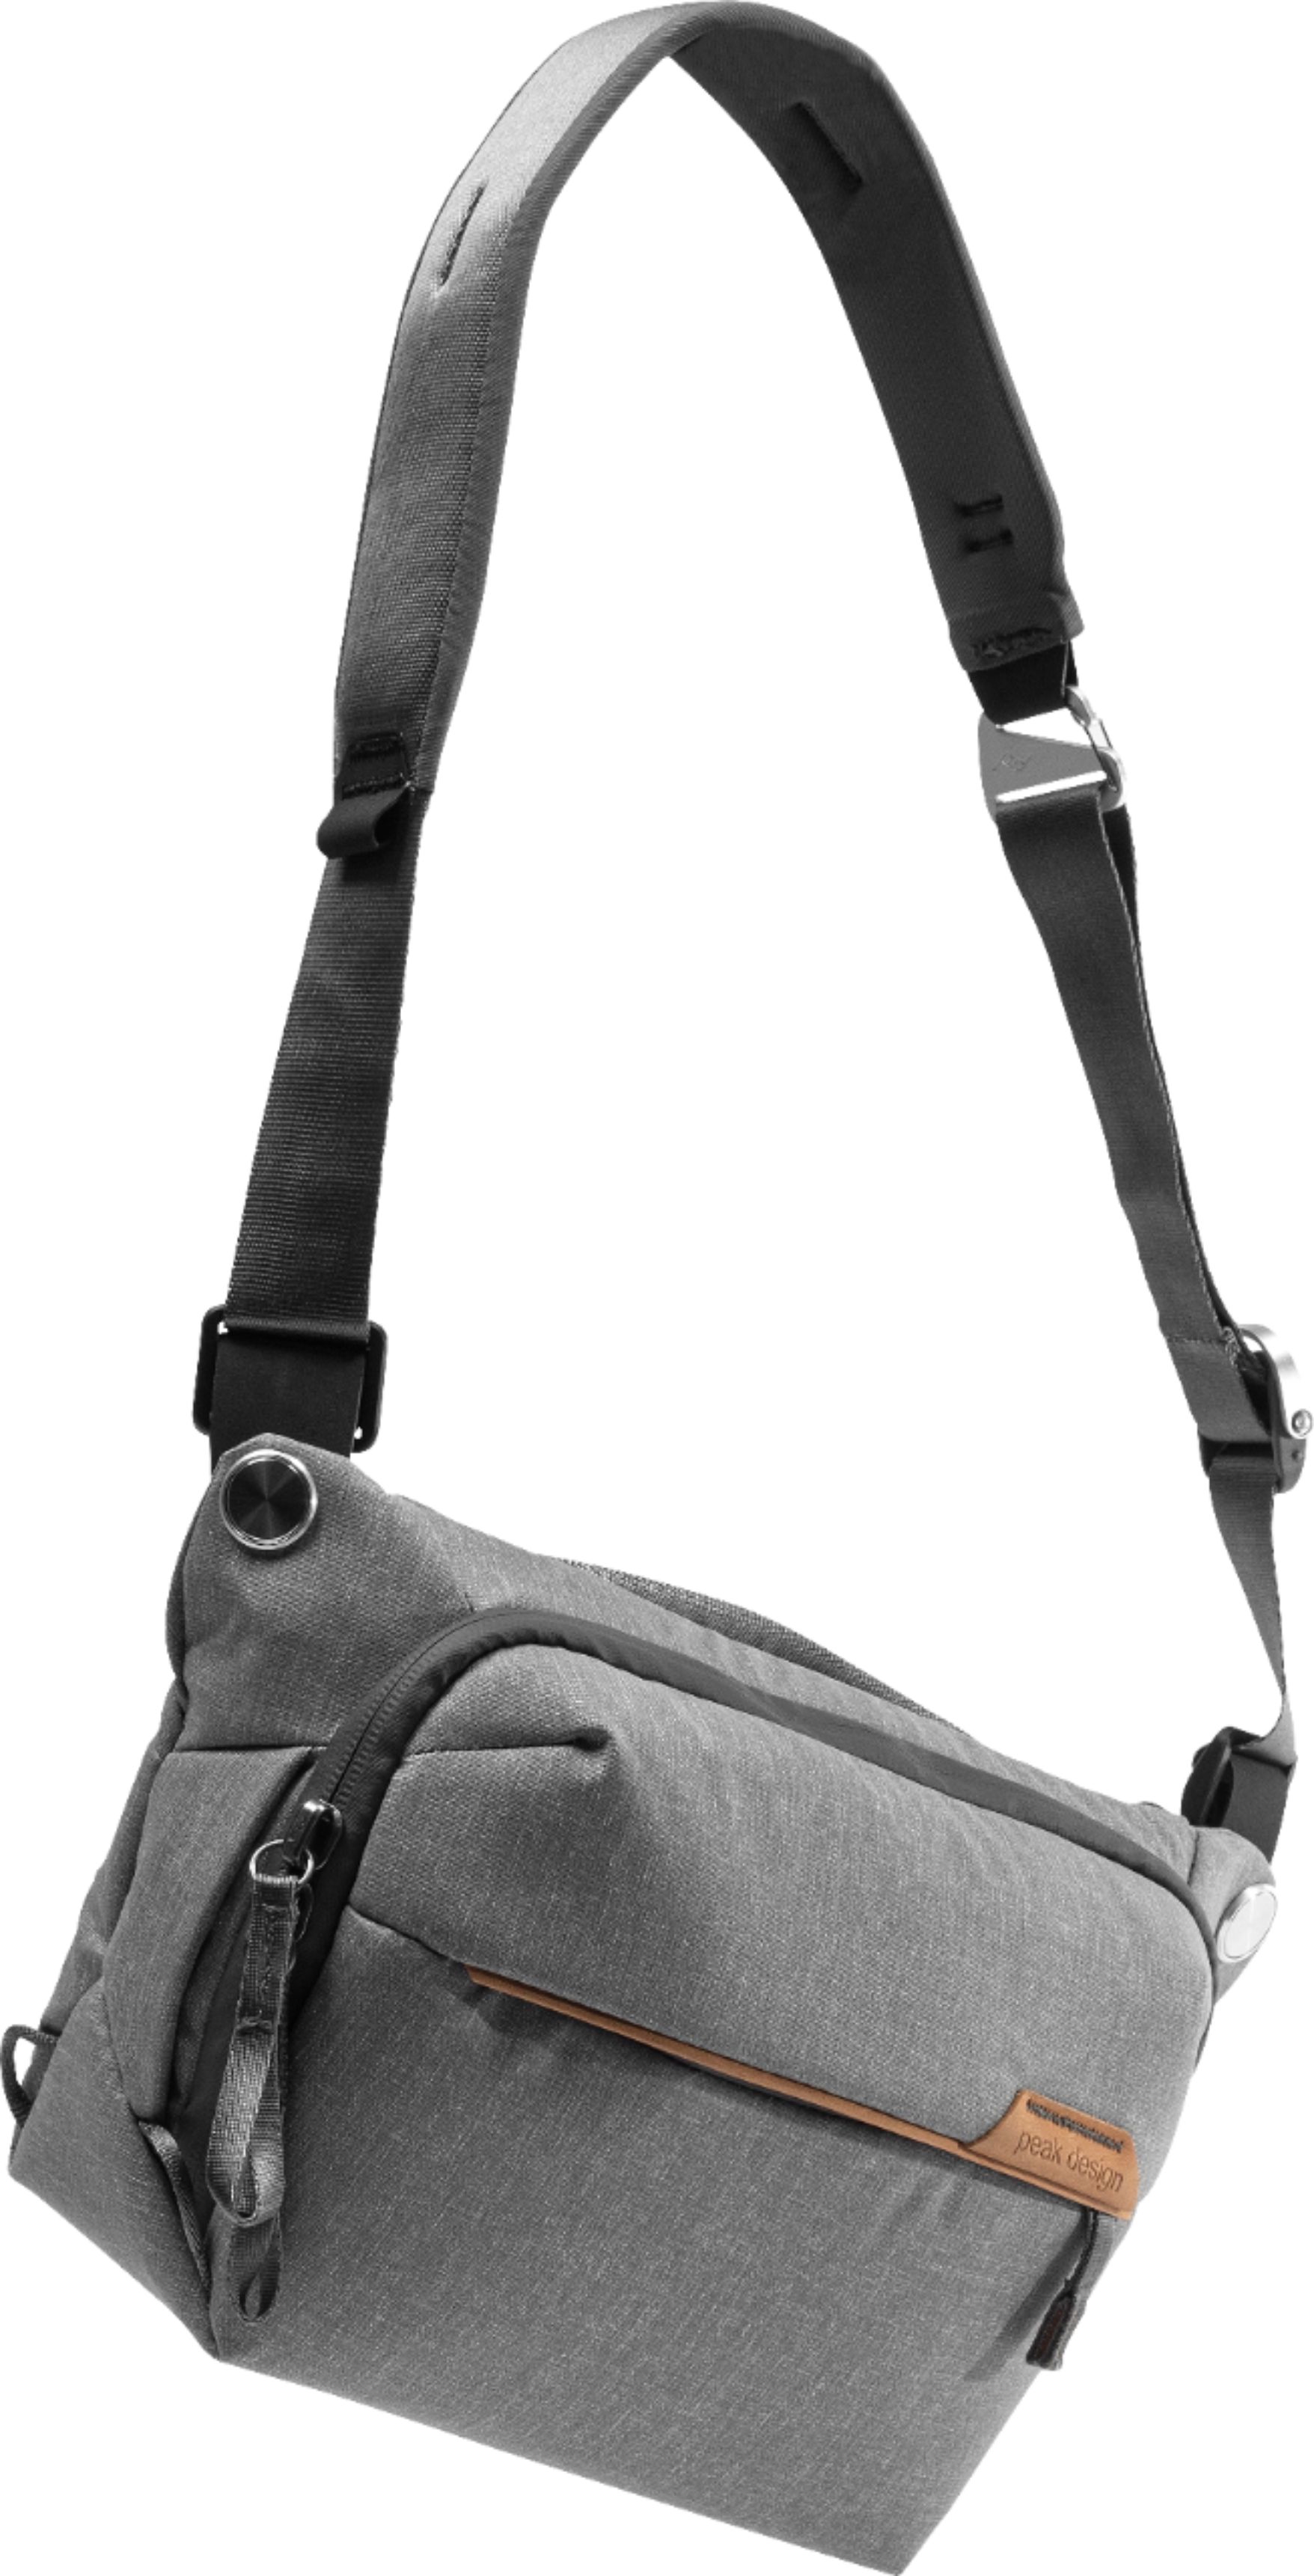 Left View: Peak Design - Everyday Backpack V2 30L - Black